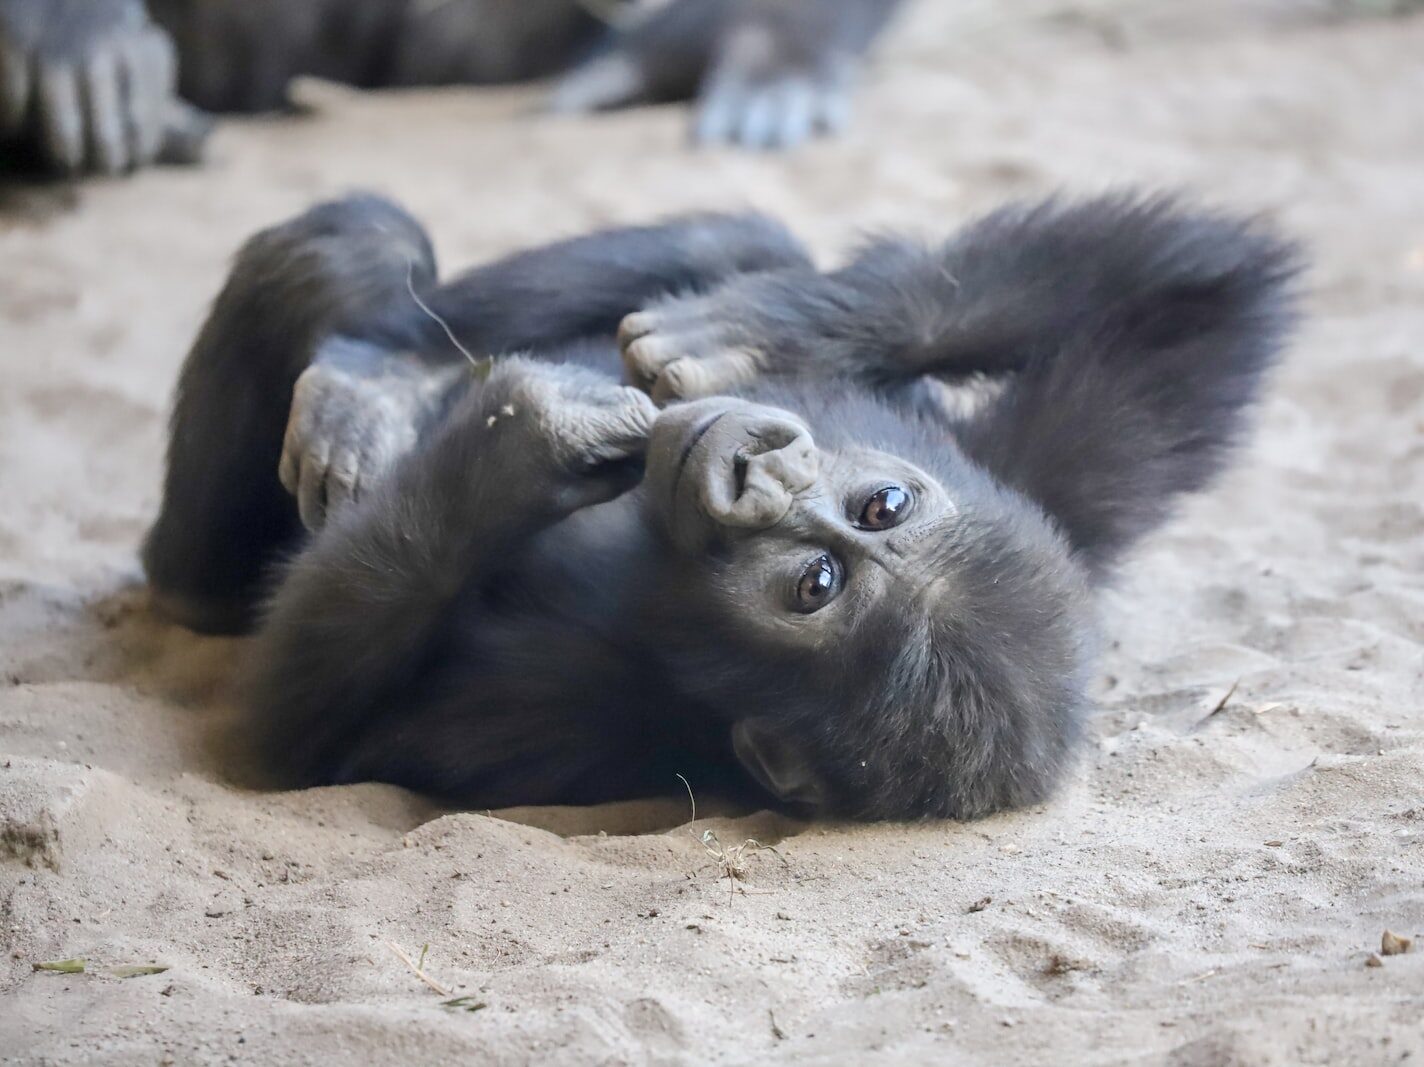 black gorilla lying on brown sand during daytime